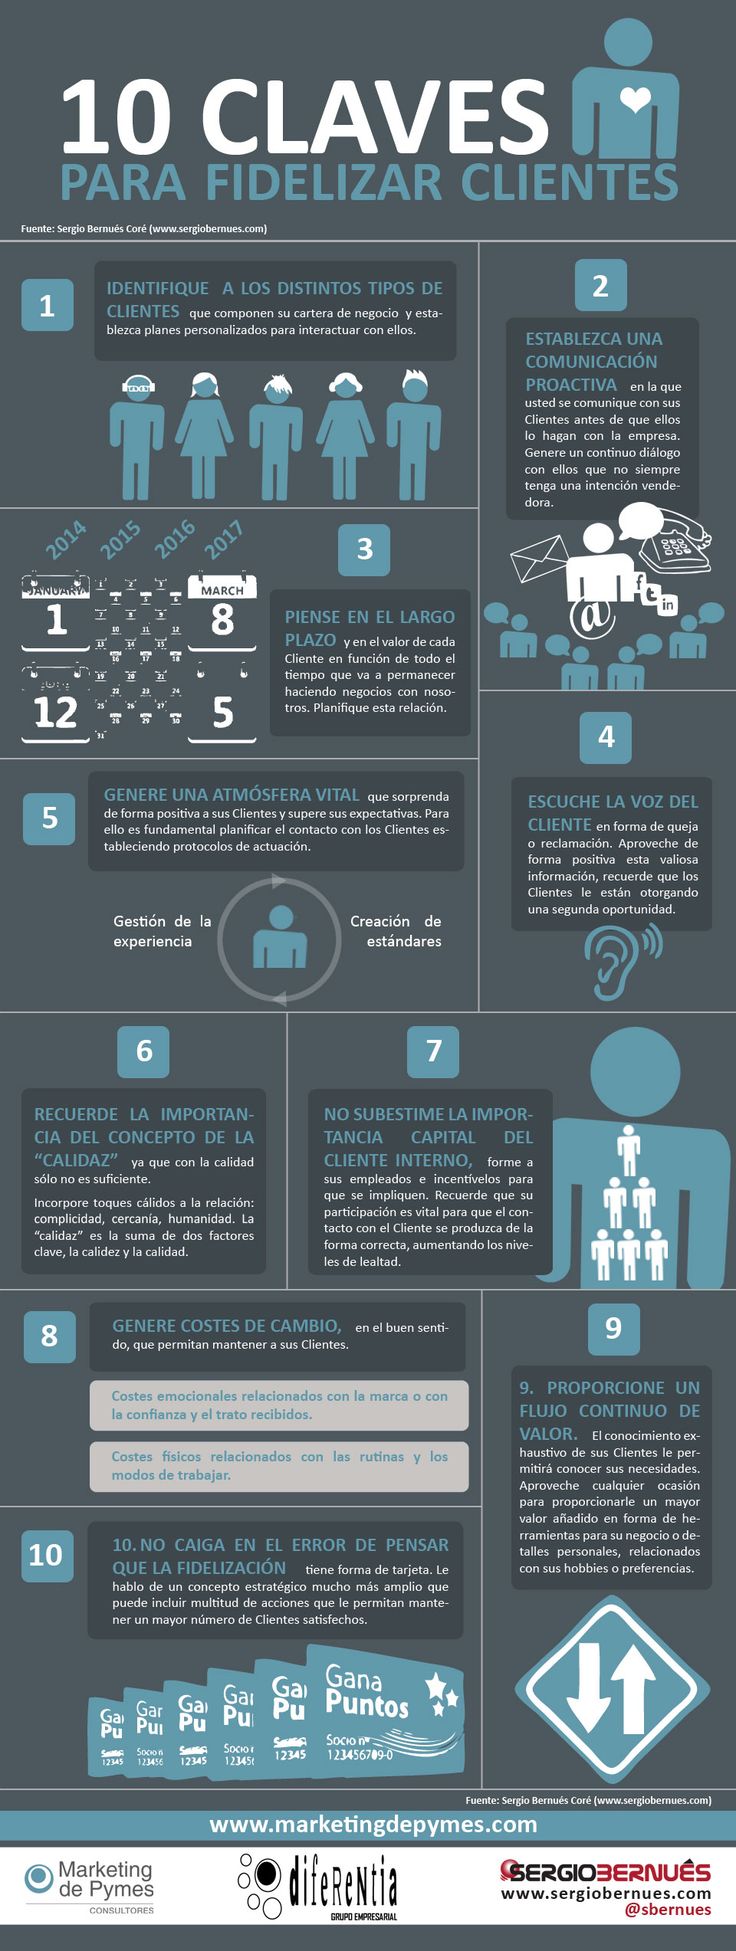 10 claves para fidelizar clientes #infografia #infographic #marketing